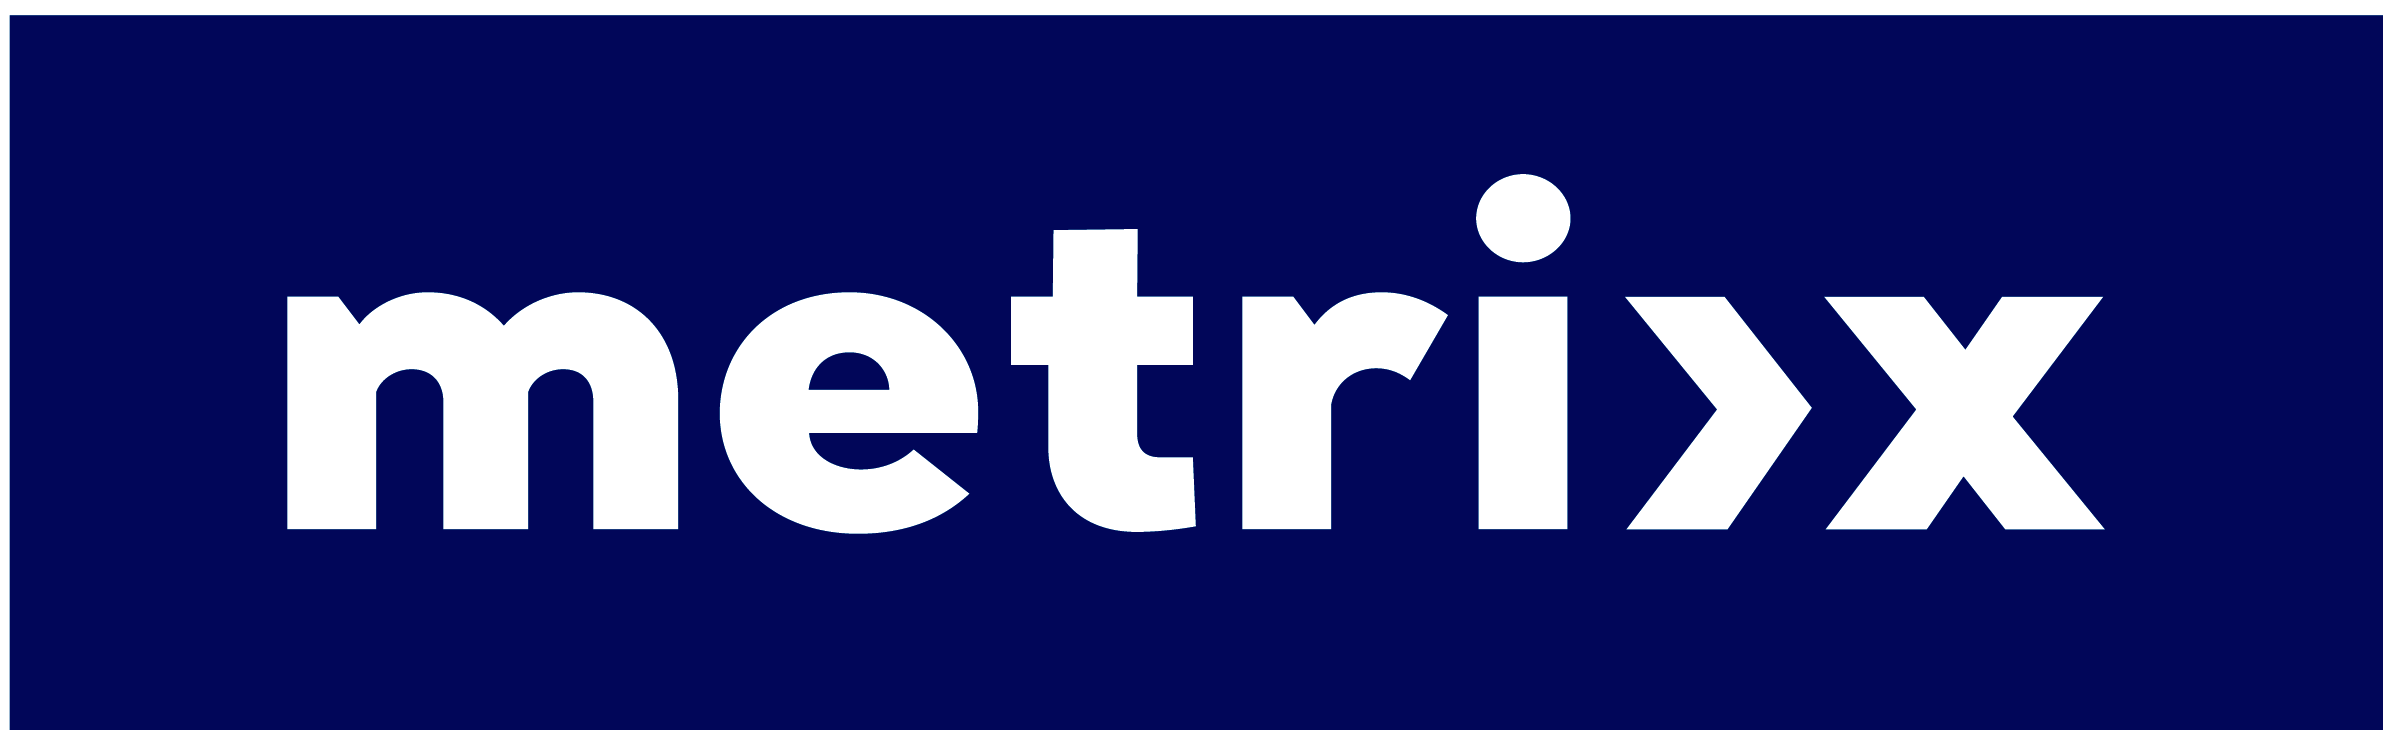 METRIXX logo